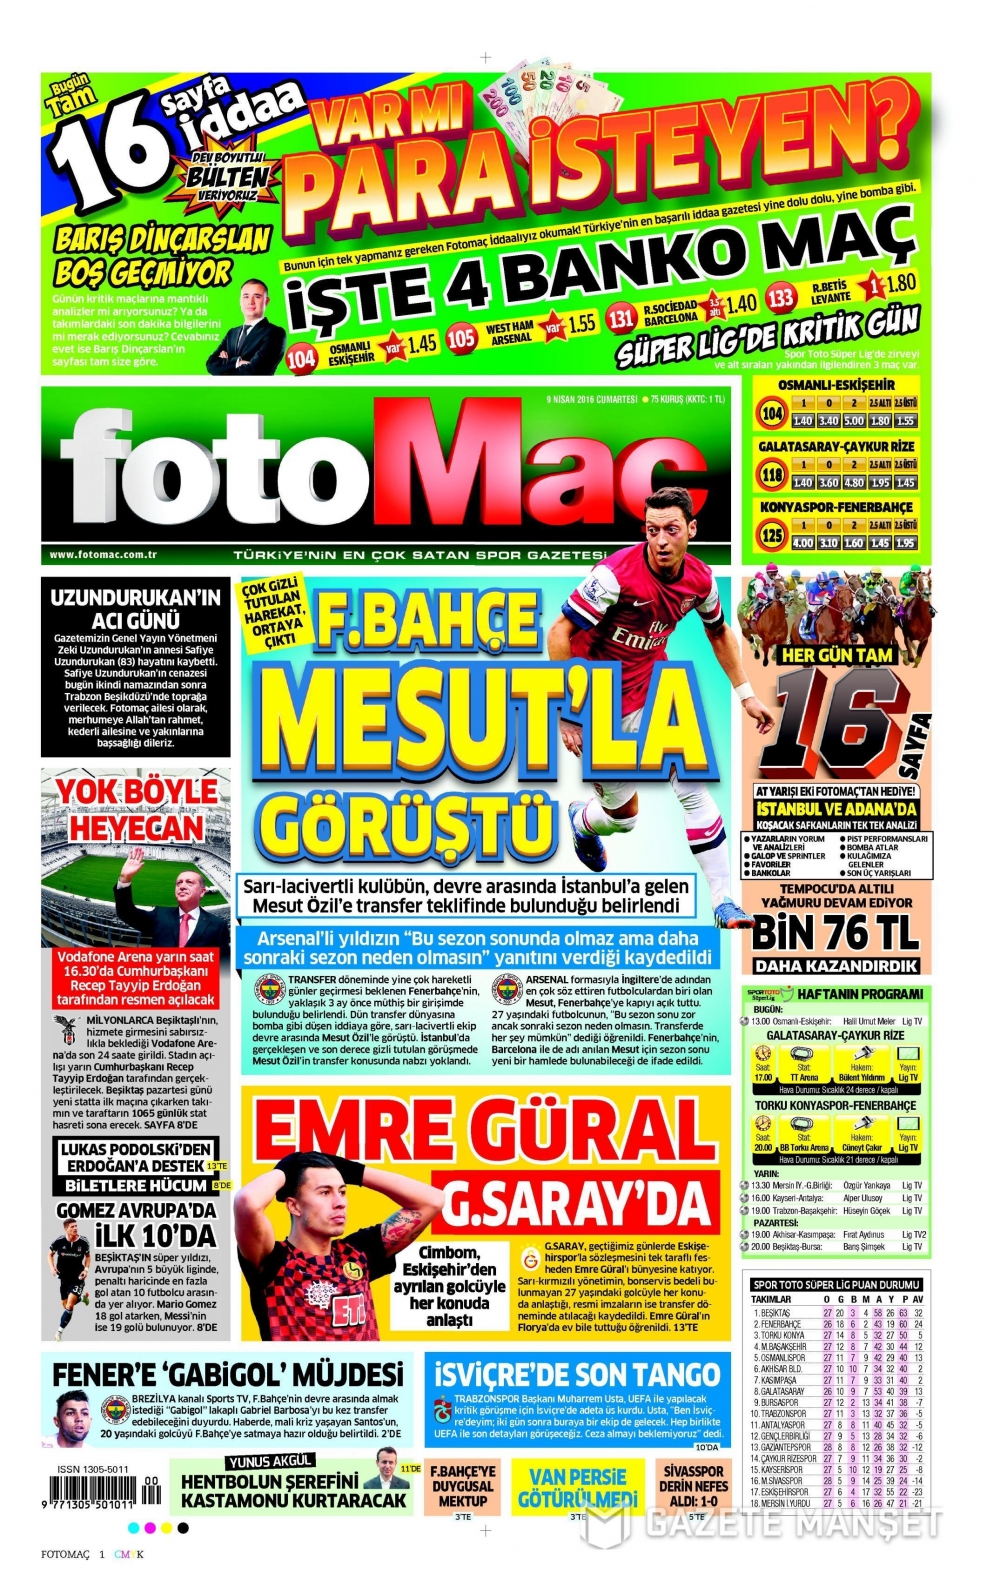 09 04 2016 tarihli Spor Gazetelerin 1. sayfaları 2